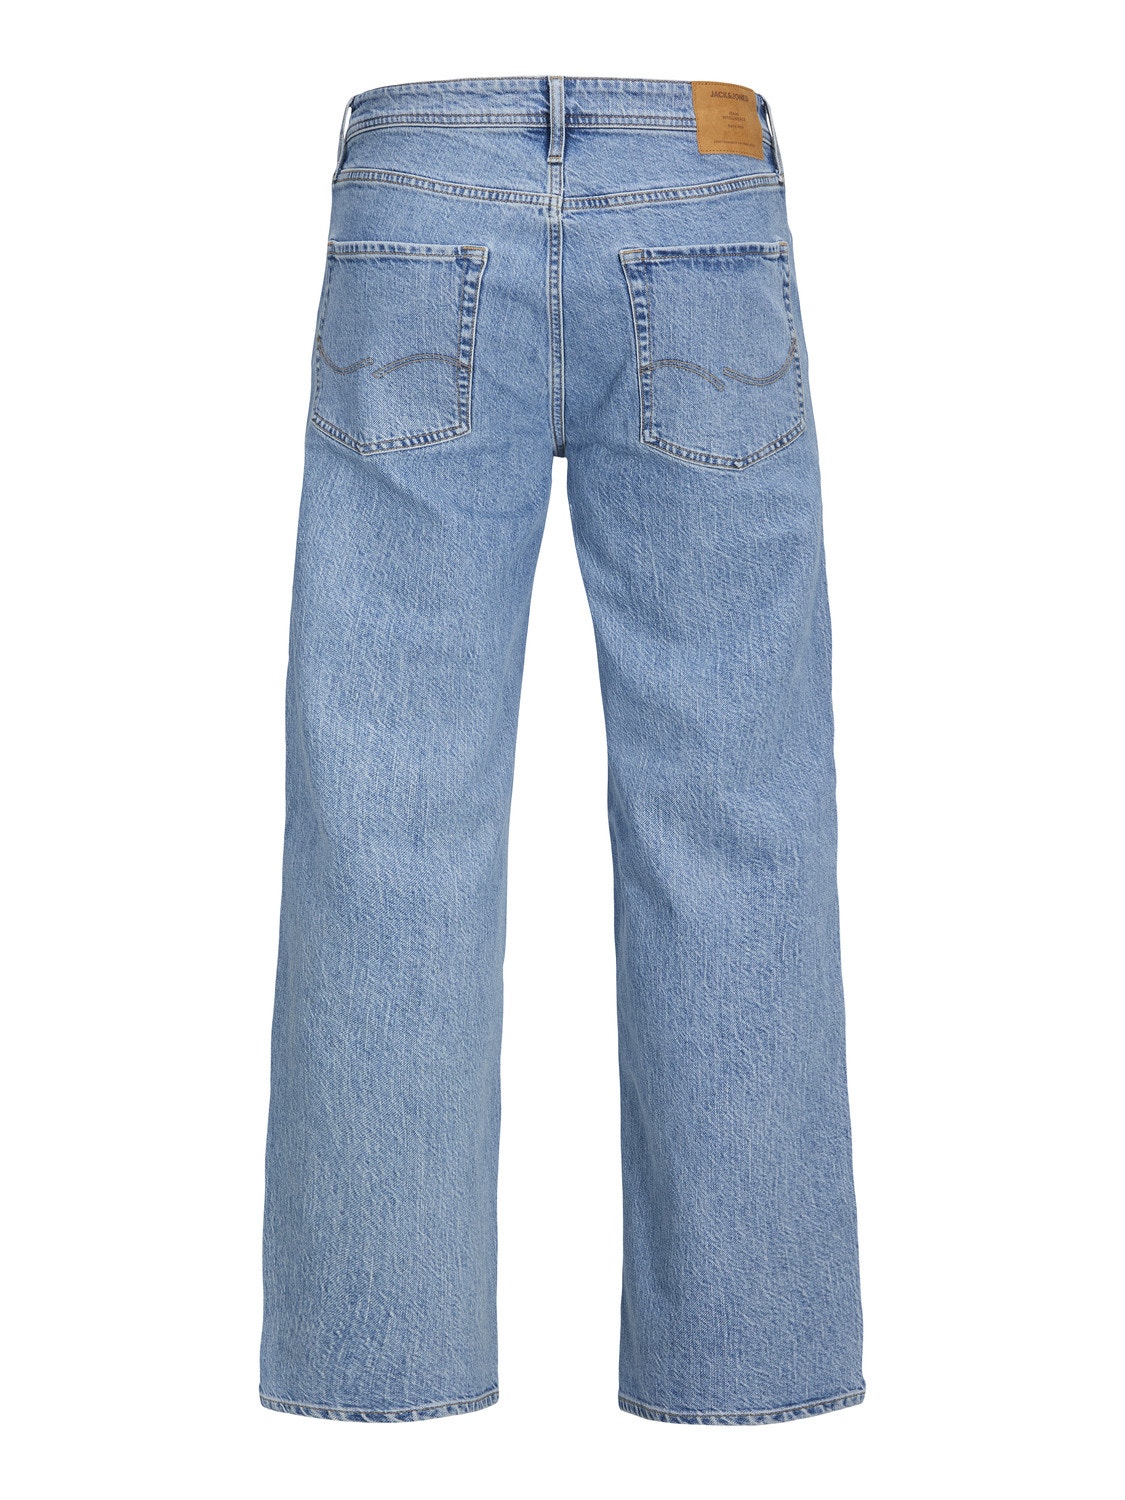 JJIEDDIE JJORIGINAL CJ 911 PCW Loose fit jeans, Medium Blue